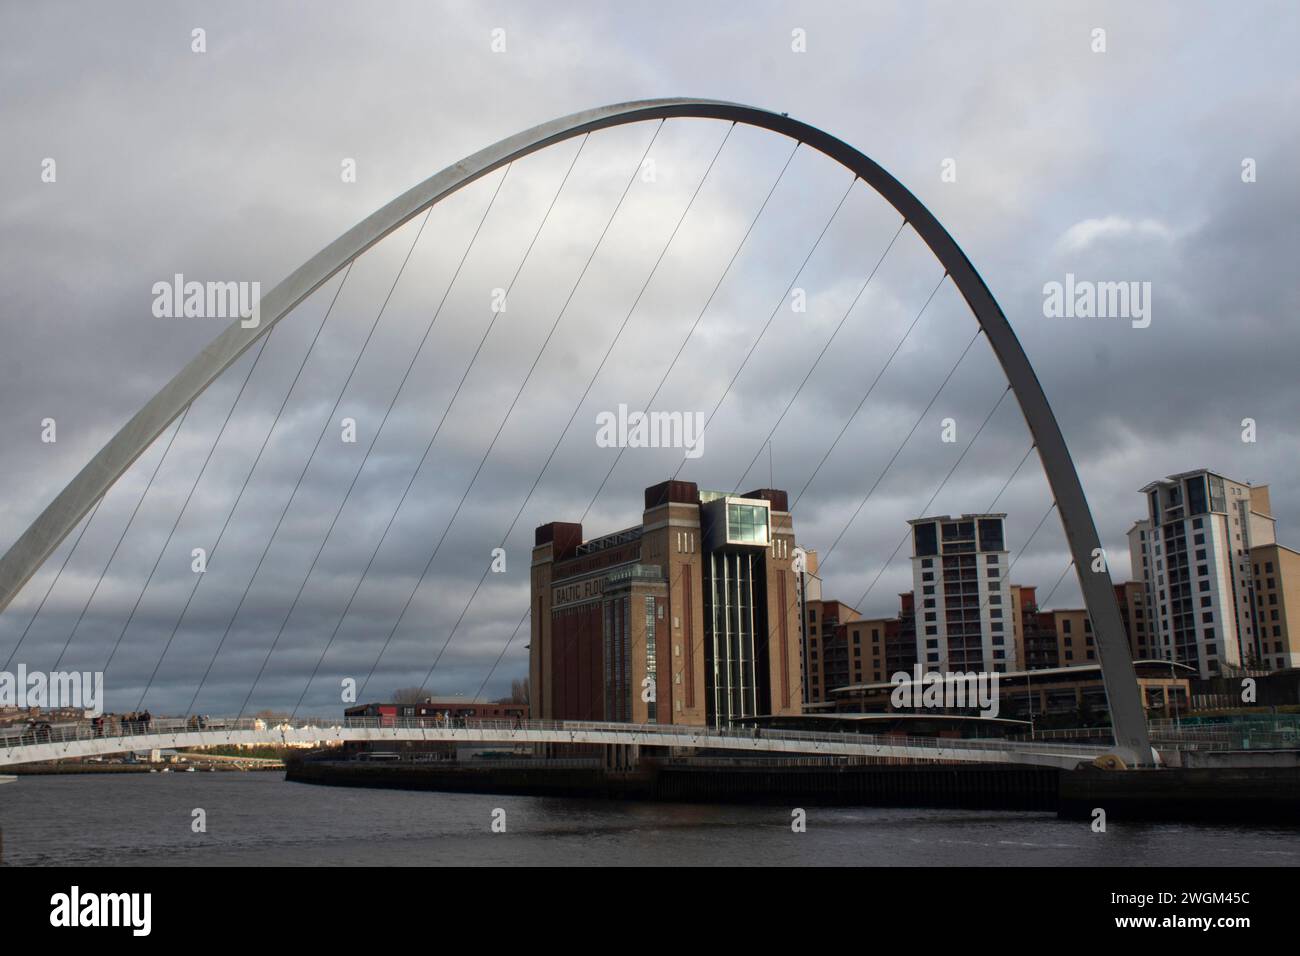 Das Baltic Art Centre, gesehen durch die Gateshead Millennium Bridge, Newcastle England, Großbritannien Stockfoto